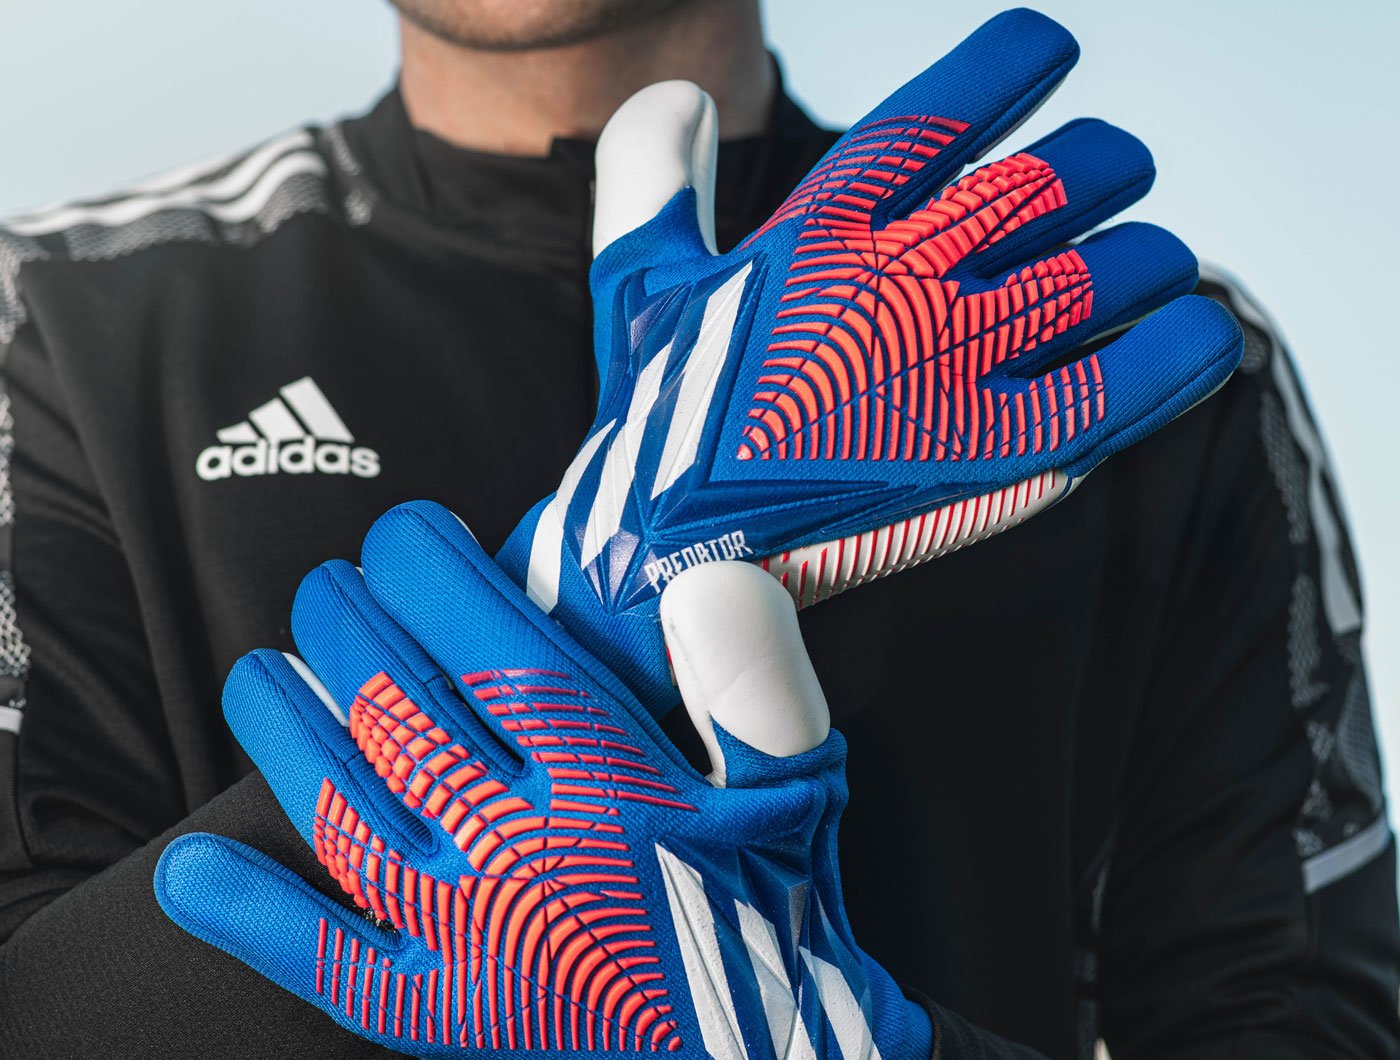 nike goalkeeper gloves sale